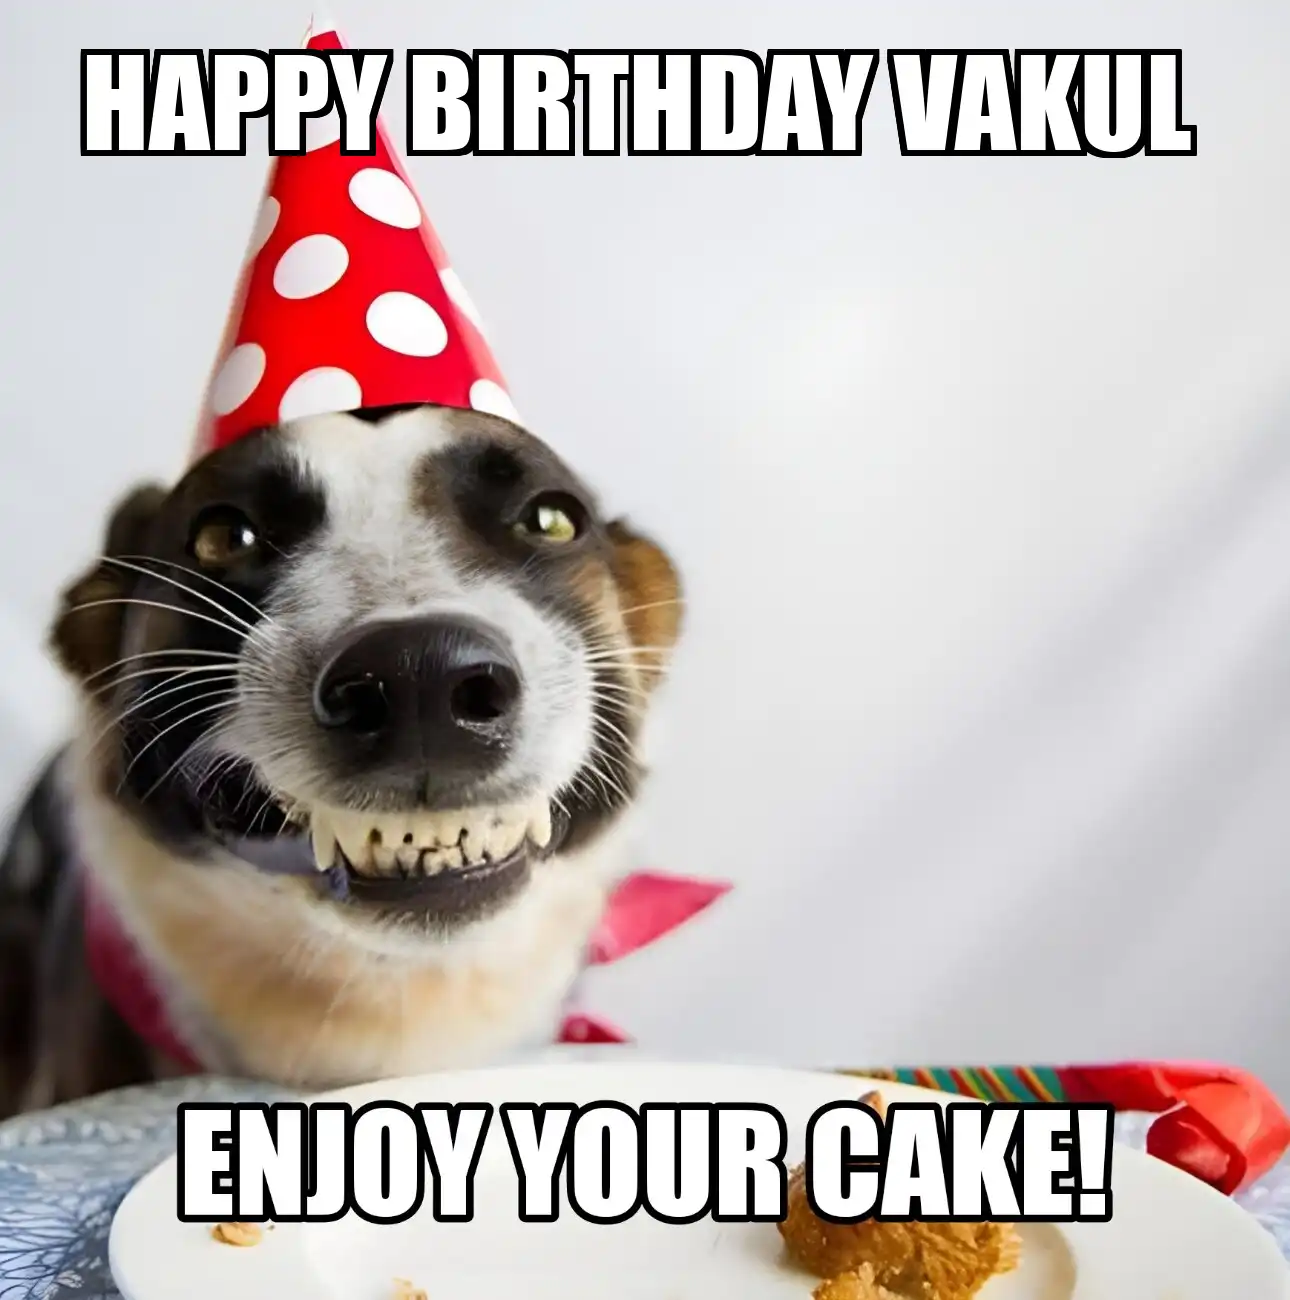 Happy Birthday Vakul Enjoy Your Cake Dog Meme